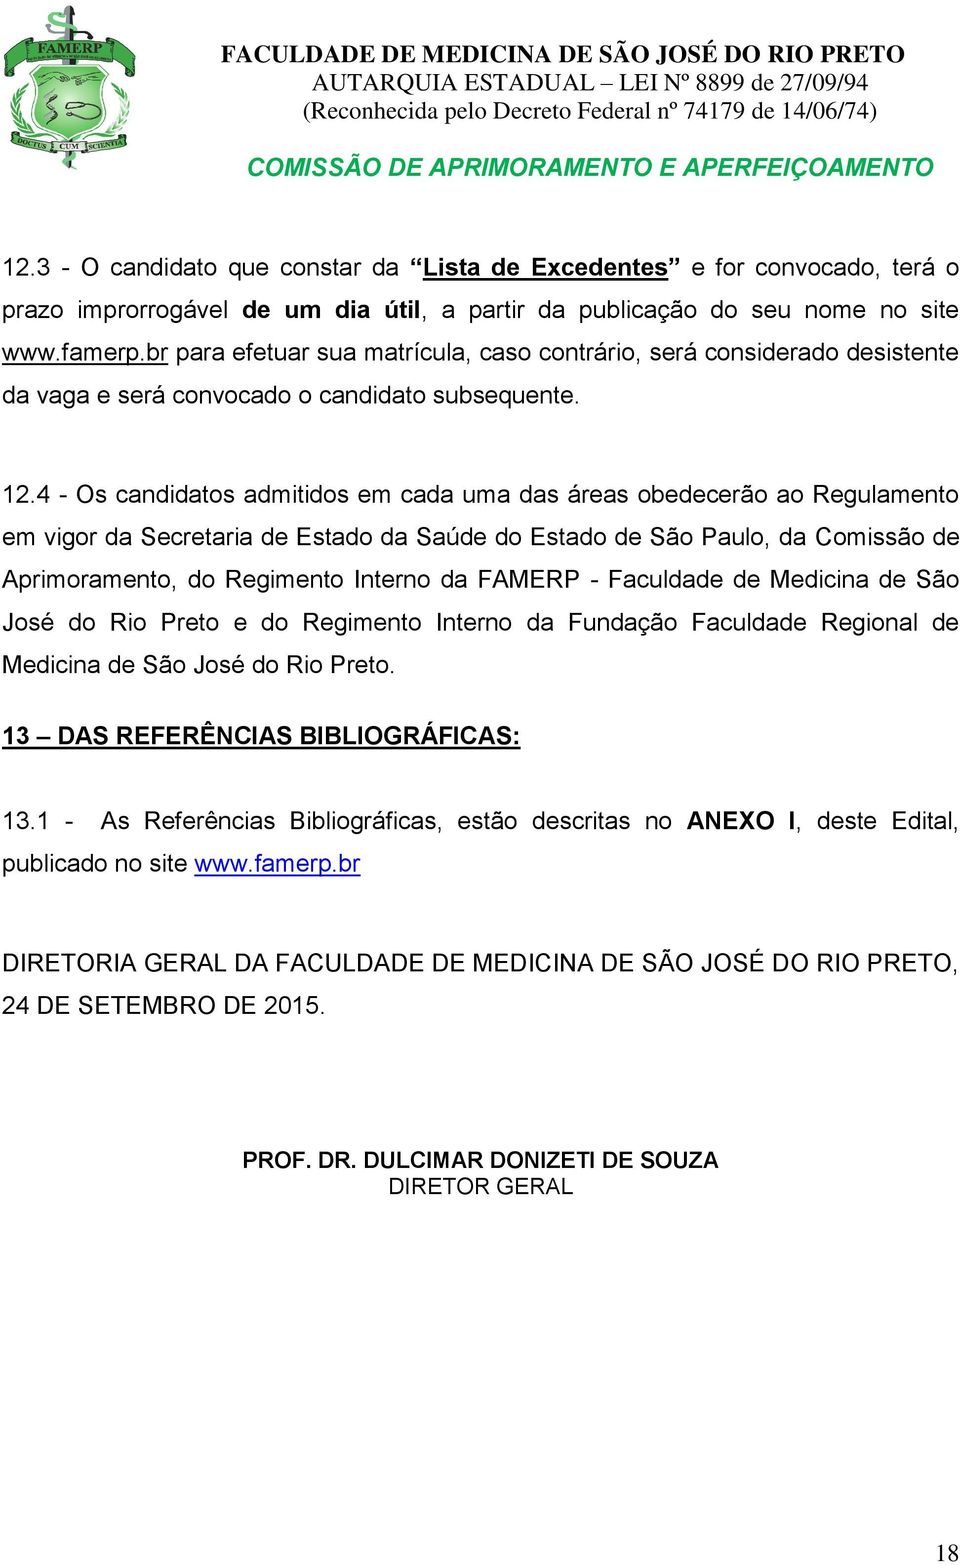 4 - Os candidatos admitidos em cada uma das áreas obedecerão ao Regulamento em vigor da Secretaria de Estado da Saúde do Estado de São Paulo, da Comissão de Aprimoramento, do Regimento Interno da